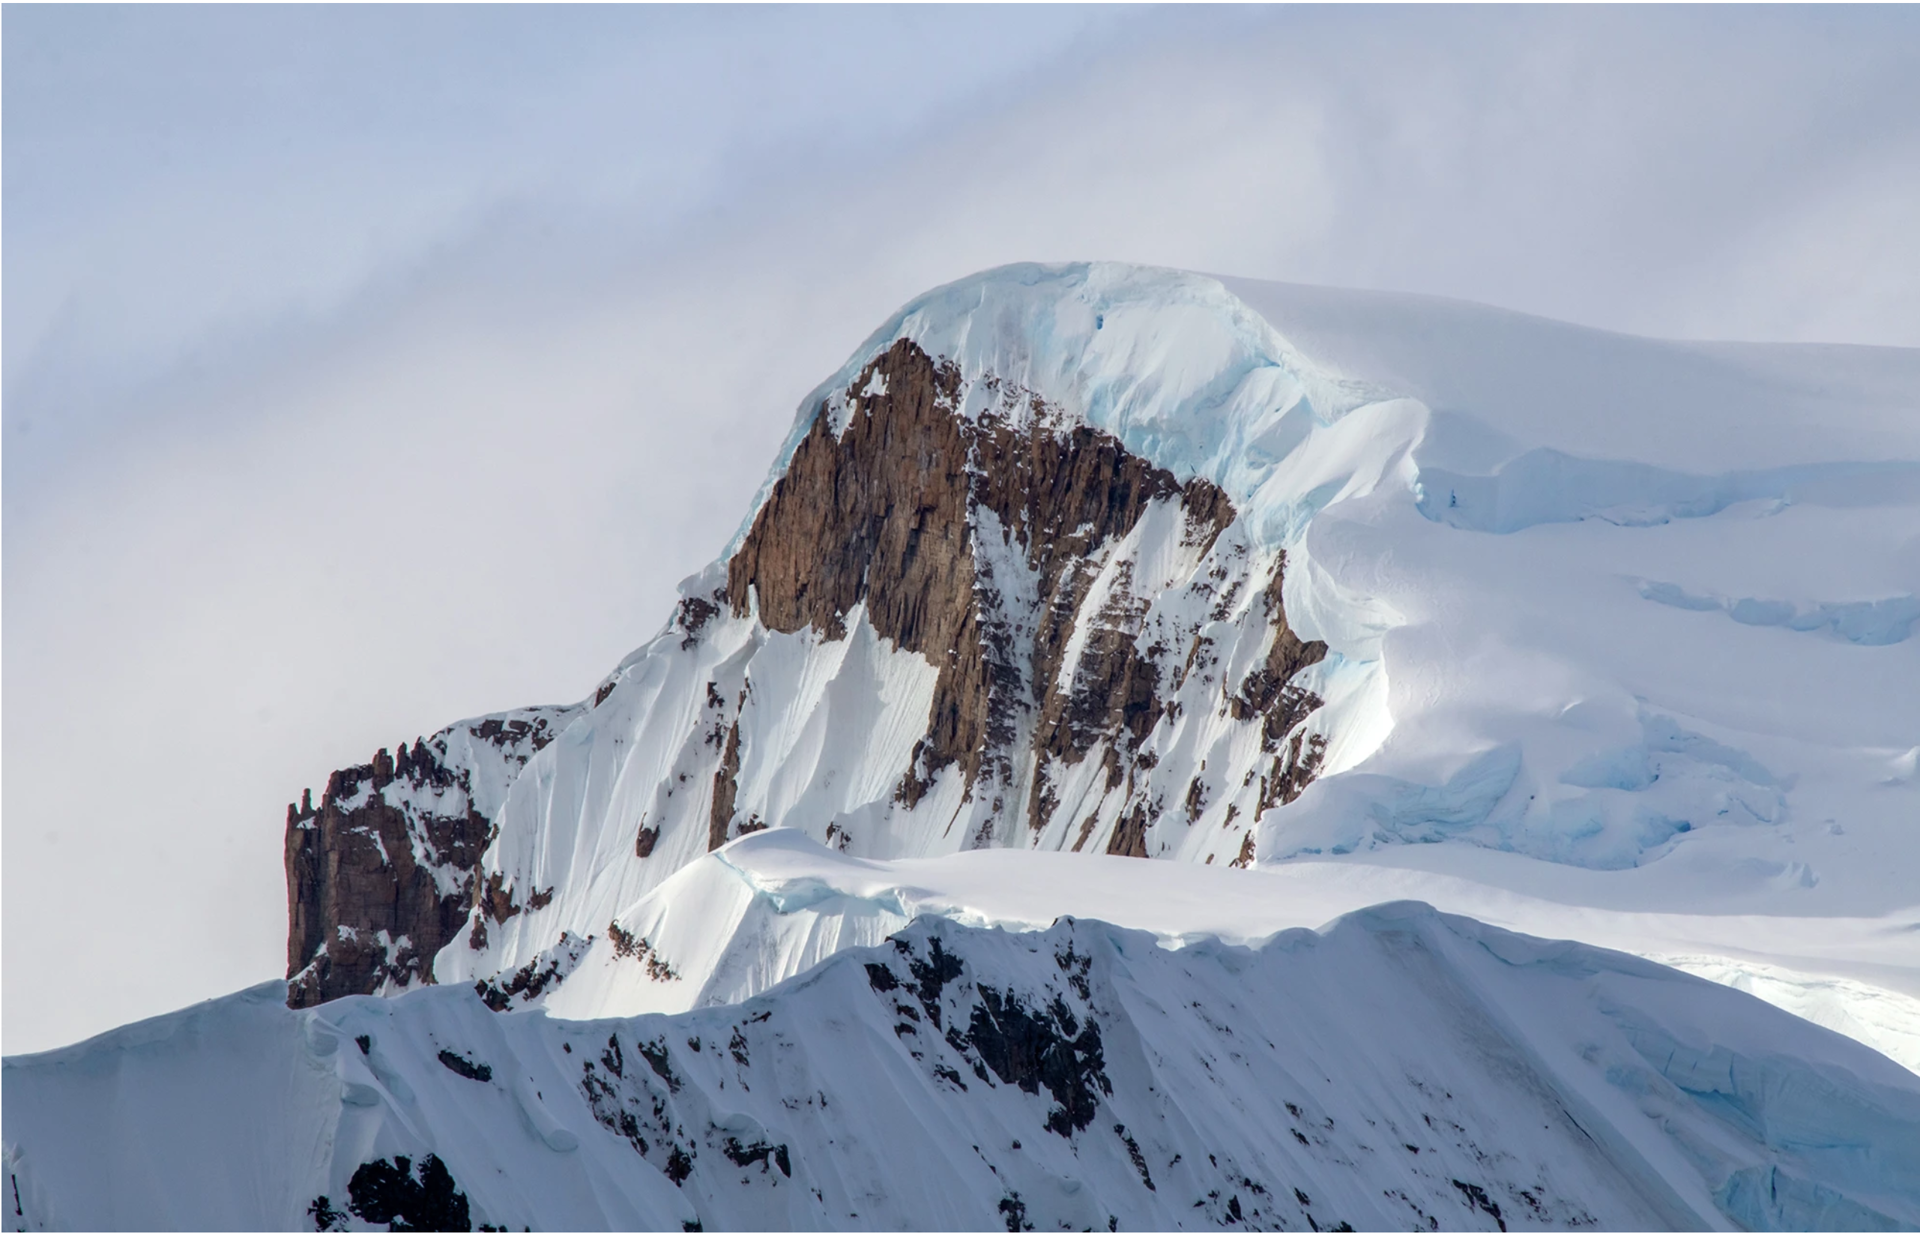 Antarctica Mountain by Danielle Eubank